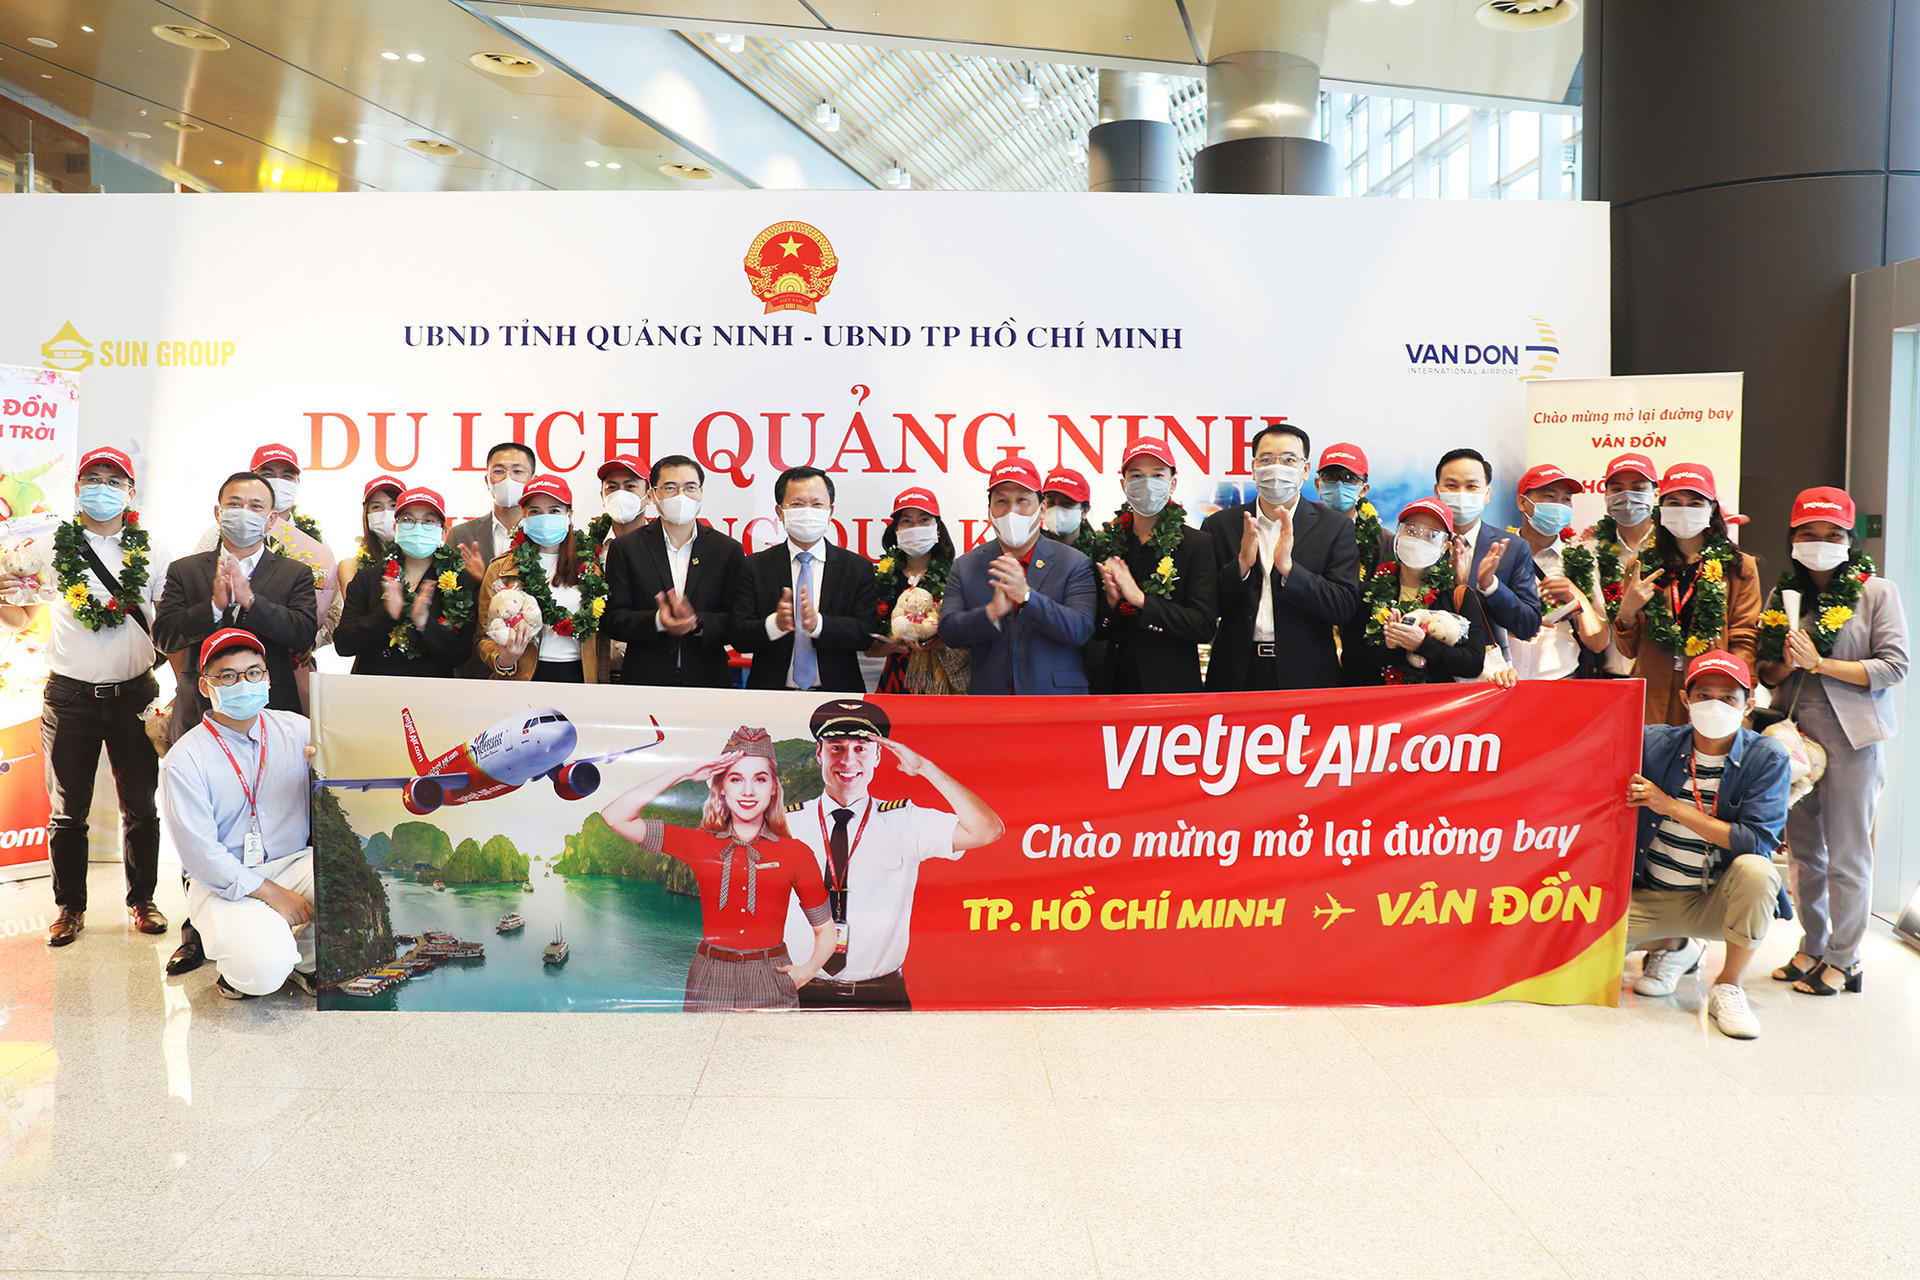 Đồng chí Cao Tường Huy, Phó Chủ tịch Thường trực UBND tỉnh, đến chúc mừng sự kiện mở lại Cảng hàng không quốc tế Vân Đồn.